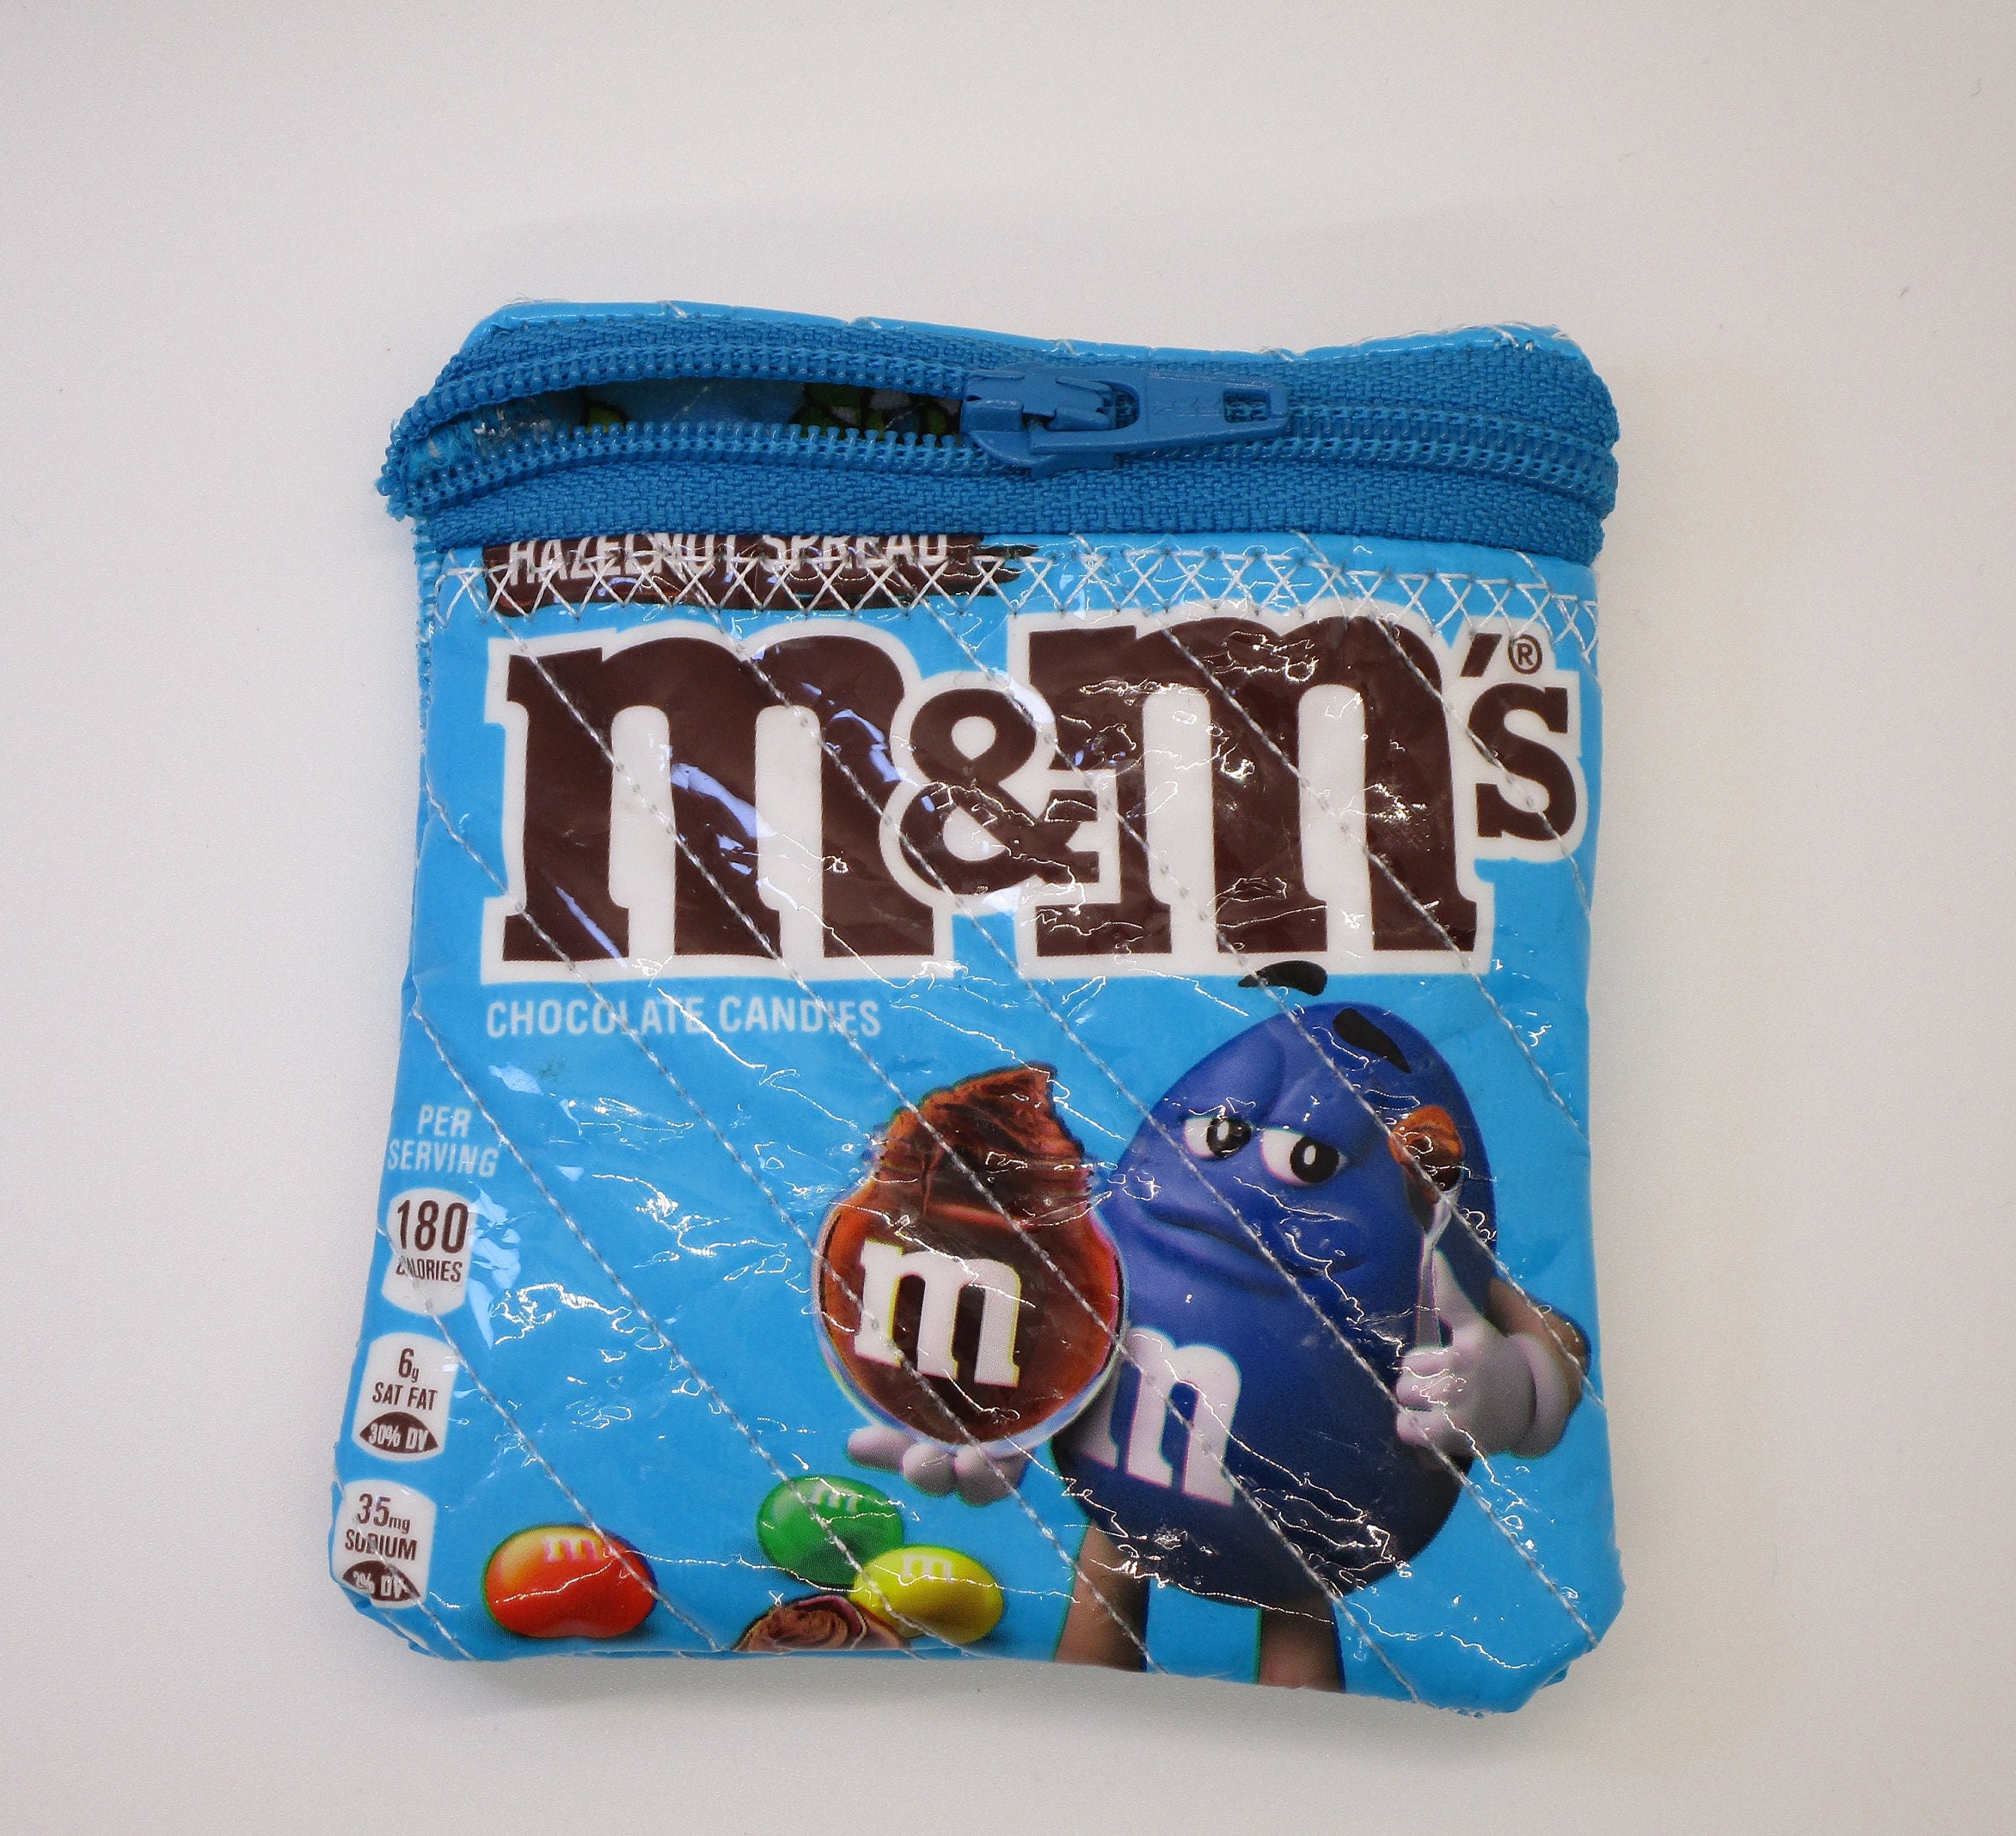 blue bag m&ms